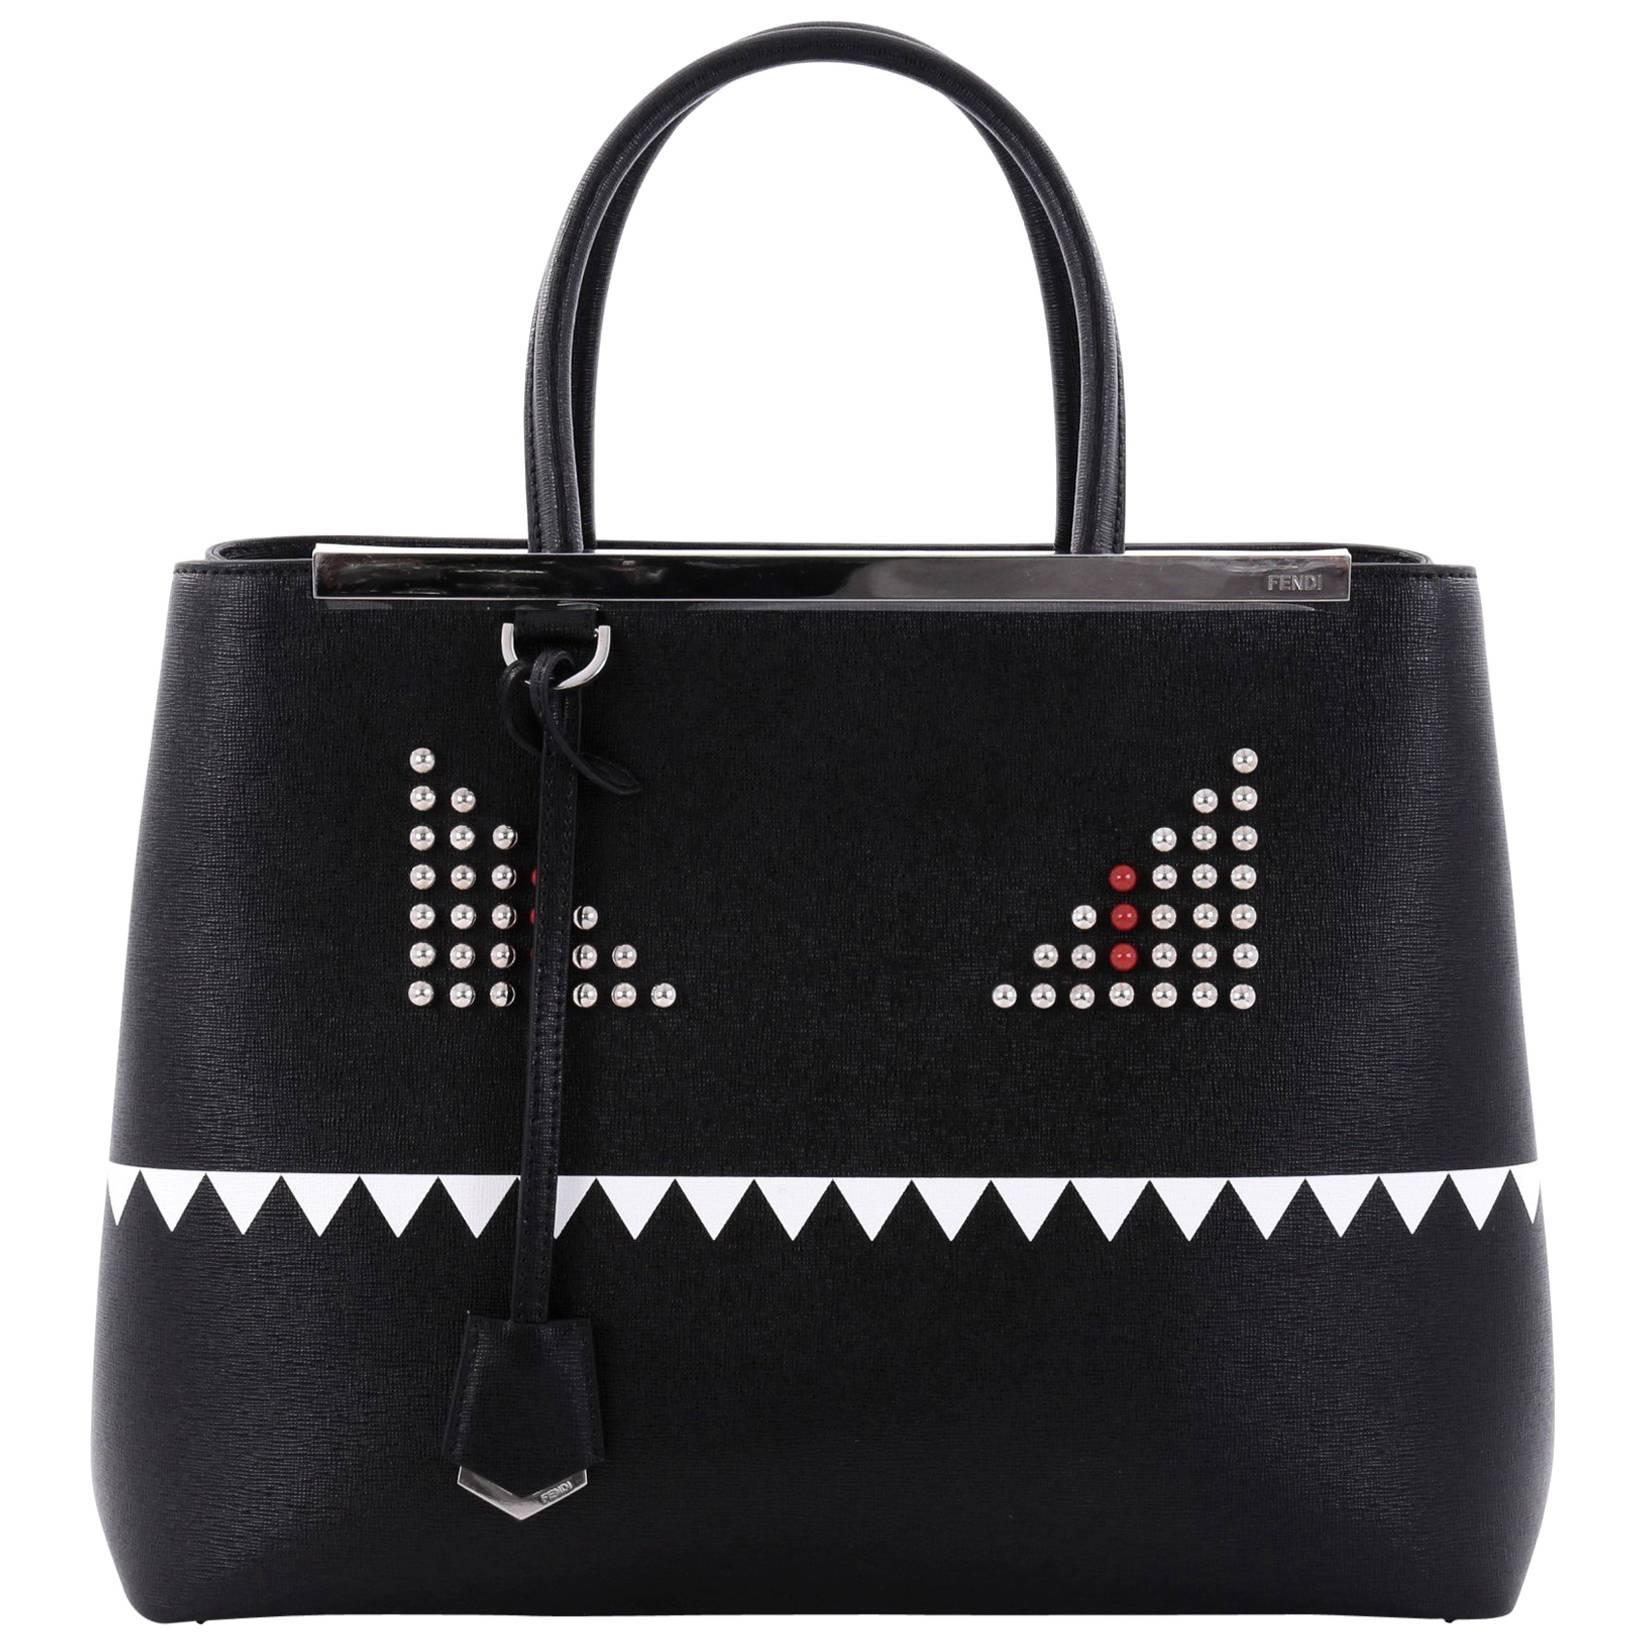 Fendi 2Jours Monster Handbag Leather Medium